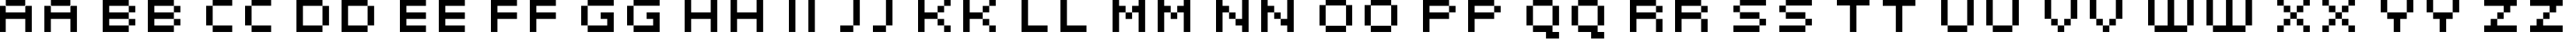 Пример написания английского алфавита шрифтом KLMN PixF03